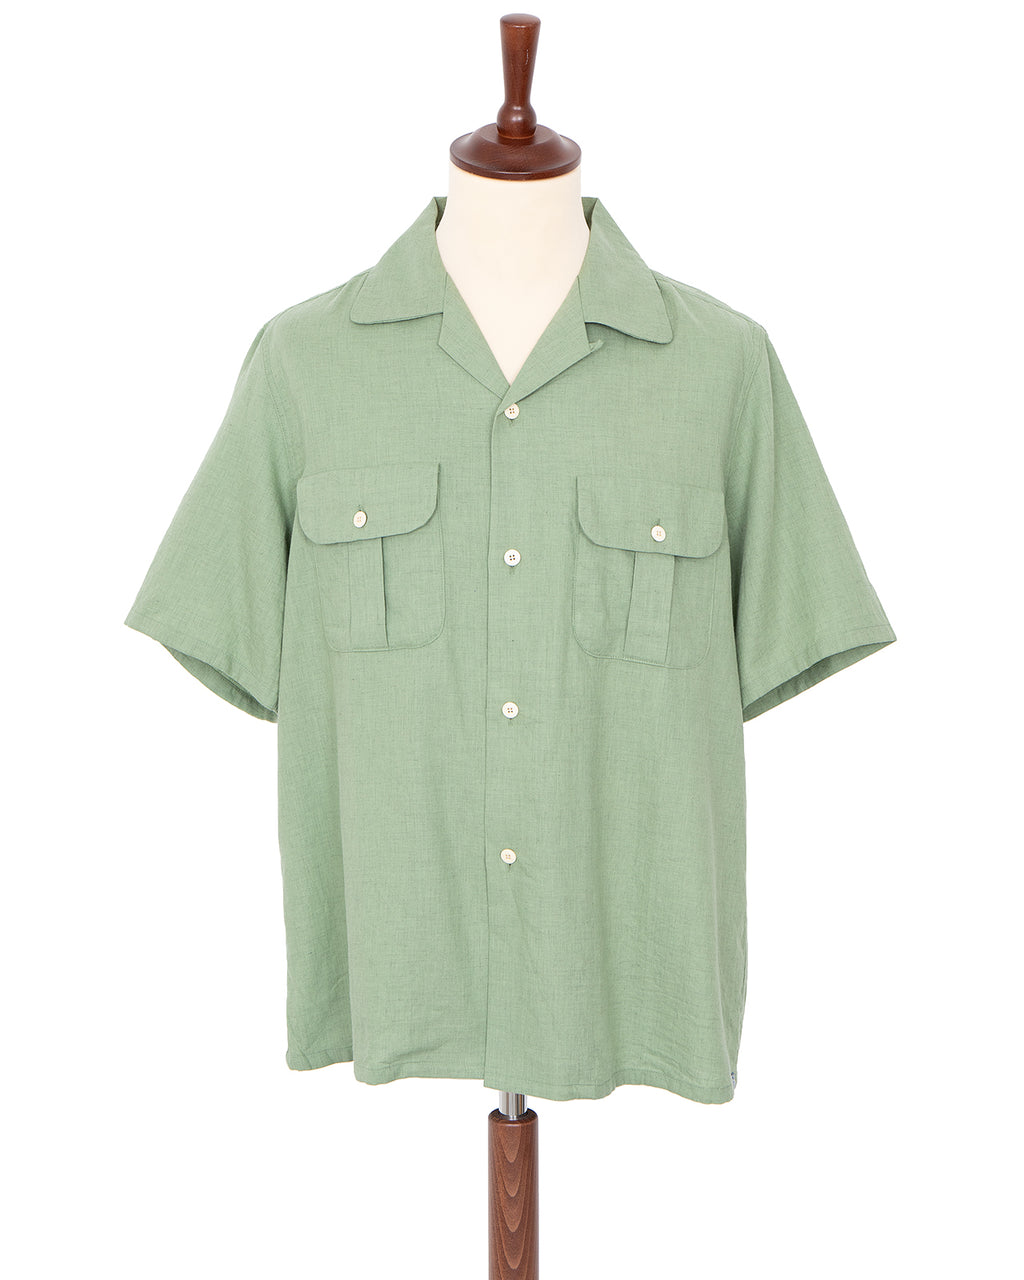 Visvim Keesey G.S. Shirt S/S, Green